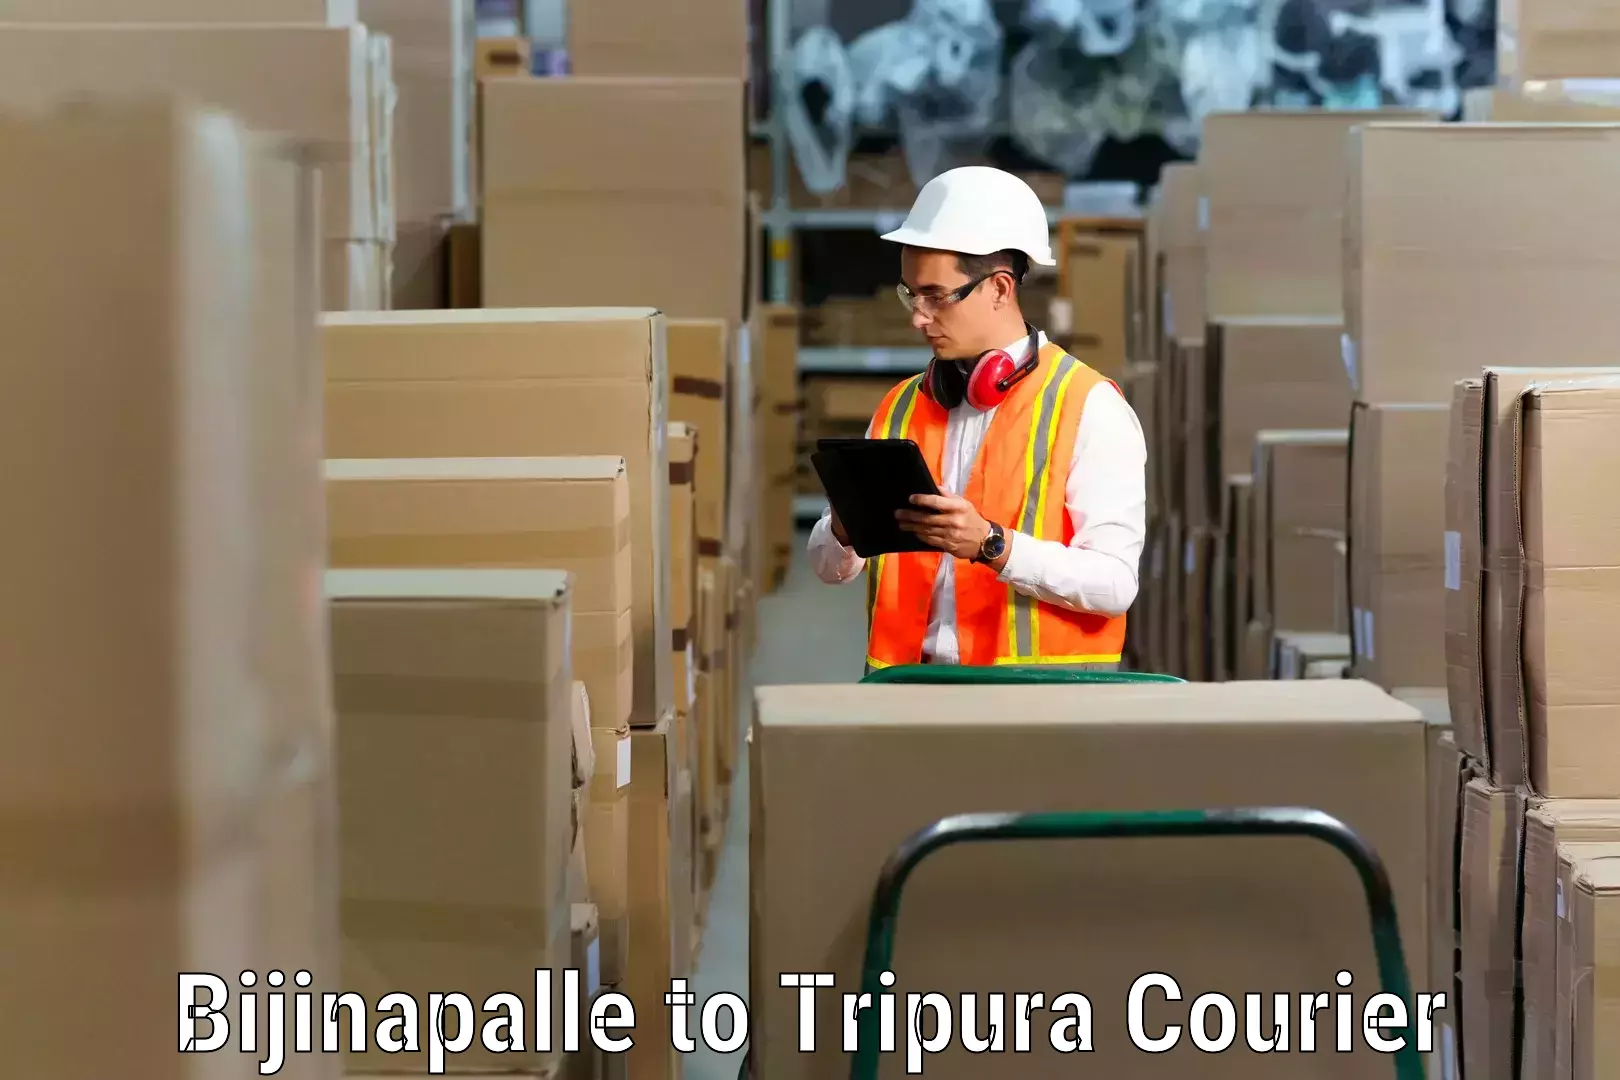 Furniture moving experts Bijinapalle to Tripura